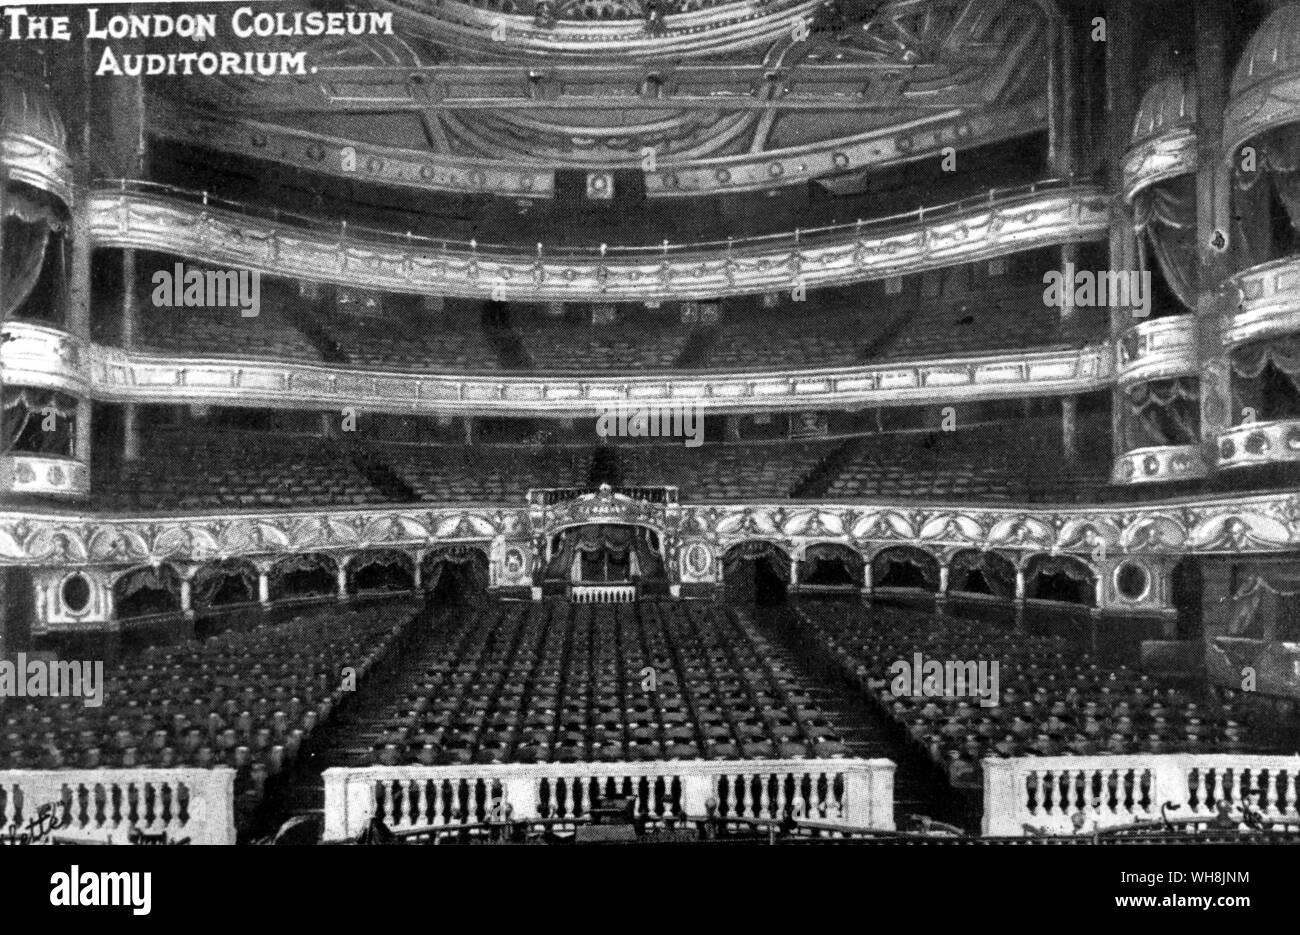 London Coliseum Auditorium Stock Photo